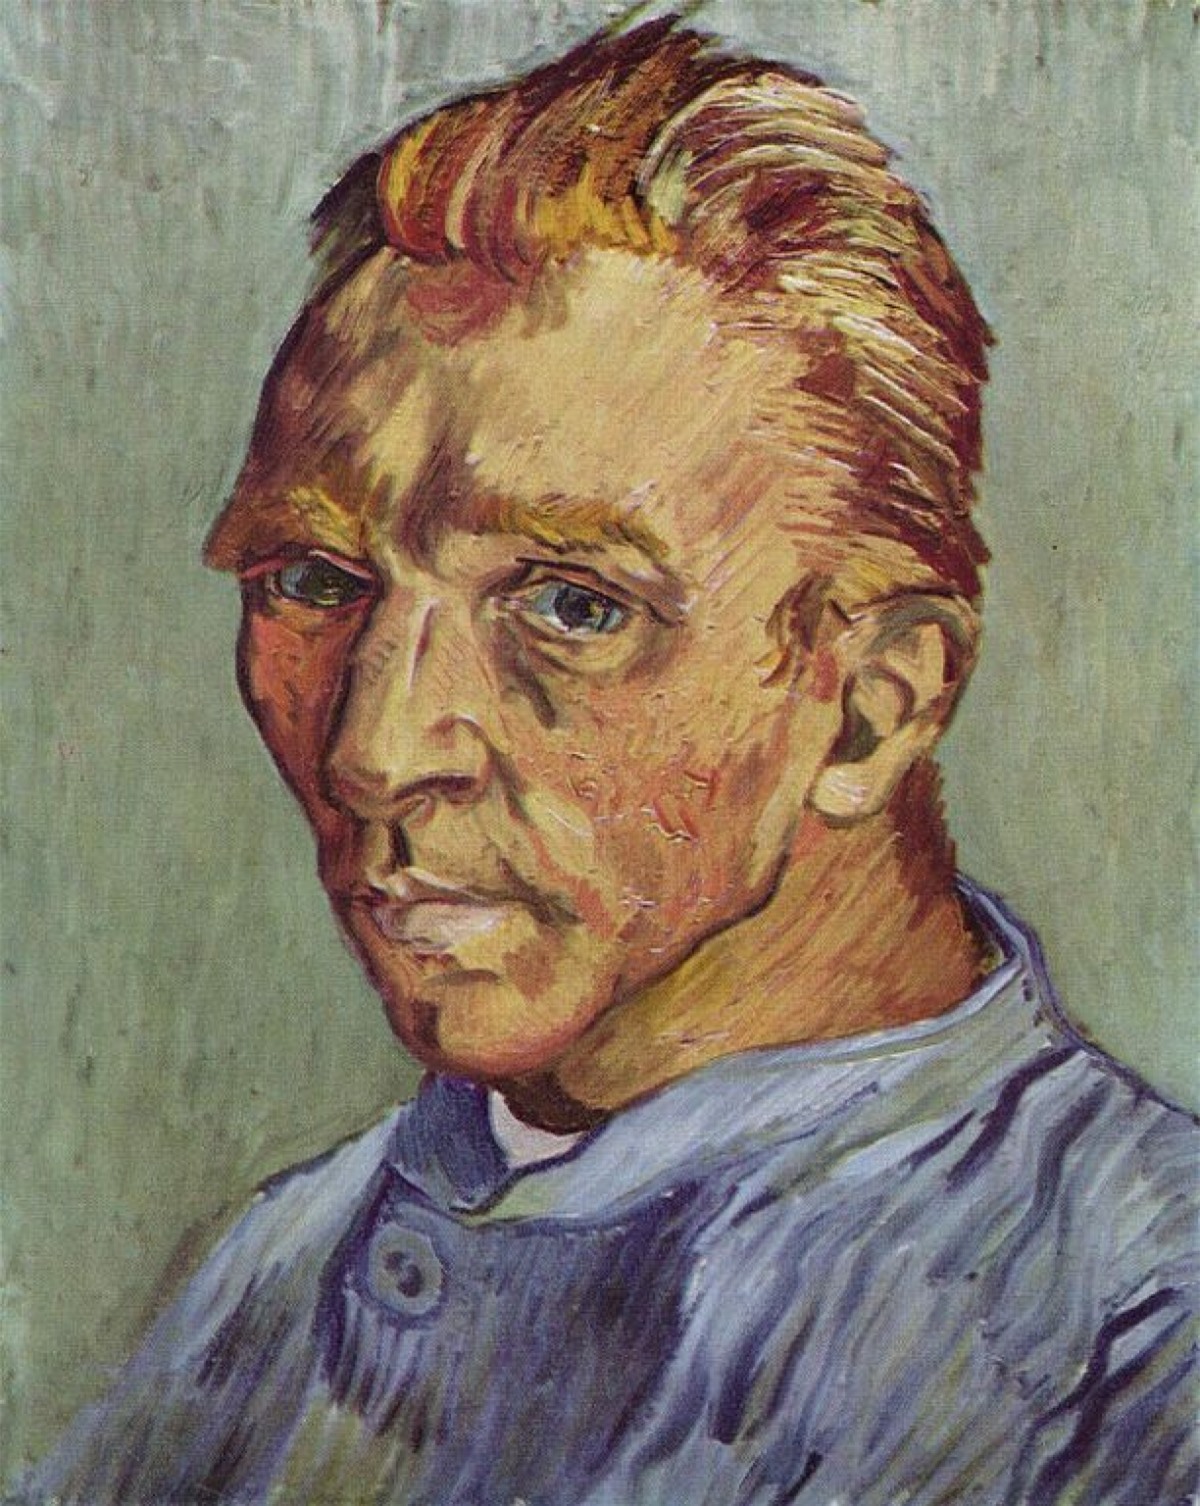 Chân dung tự họa không râu của Vincent van Gogh. Mặc dù Van Gogh đã vẽ rất nhiều bức tranh chân dung của chính ông, bức tranh này nổi bật nhất vì là bức chân dung tự họa cuối cùng của ông và là một trong số ít bức ảnh mô tả ông không có râu. Bức tranh được tặng cho mẹ ông như một món quà sinh nhật. Đây cũng là một trong những bức tranh đắt nhất mọi thời đại, được bán với giá 71,5 triệu USD vào năm 1998 và hiện đang nằm trong bộ sưu tập của một cá nhân.